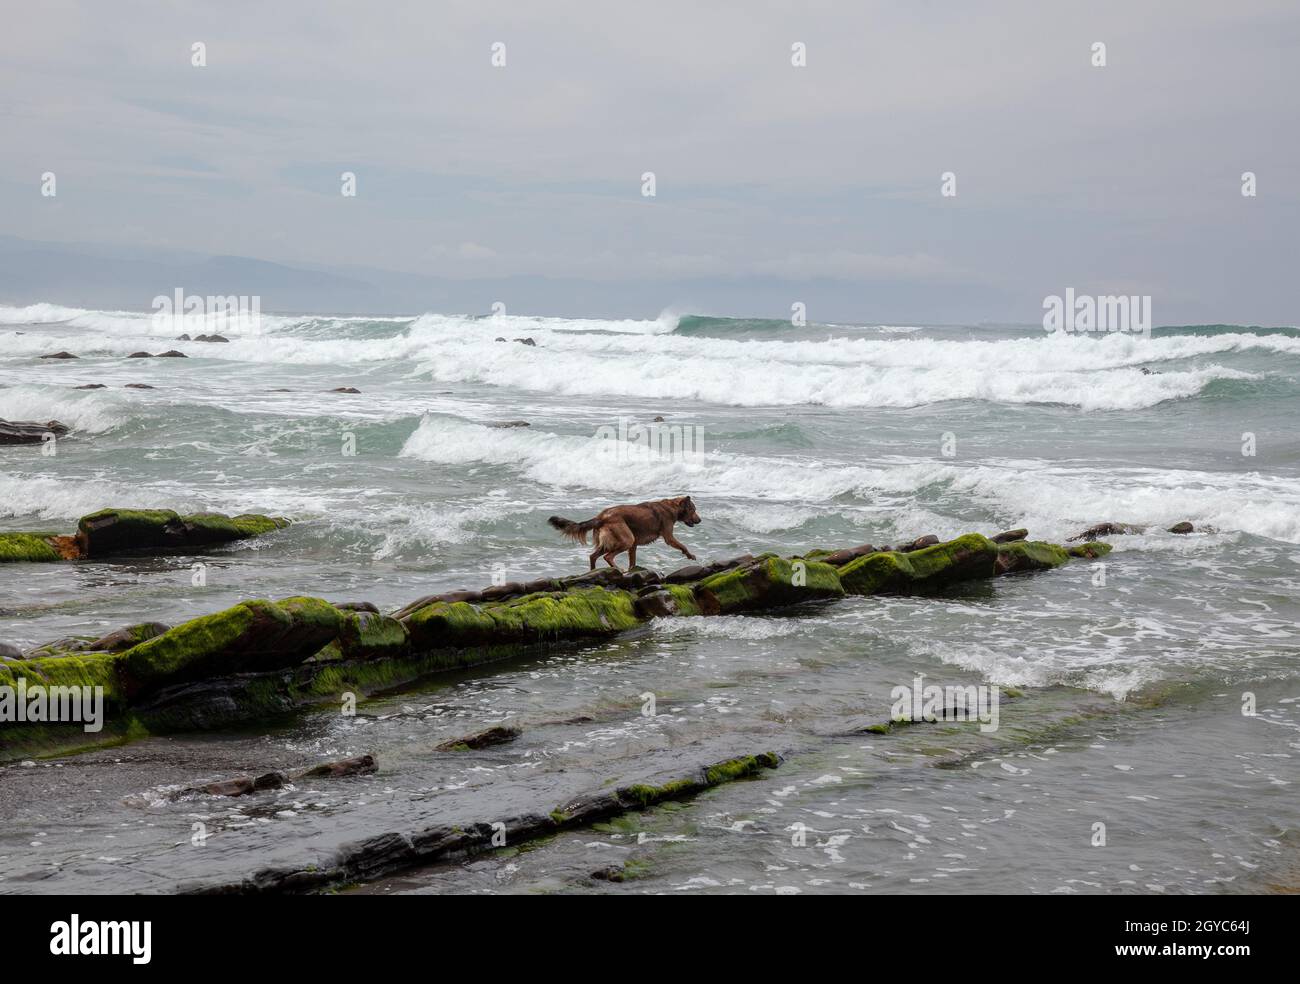 Hund am Ufer von Barrica in Spanien mit Steinen, die mit Algen bedeckt aus dem Wasser ragen Stockfoto